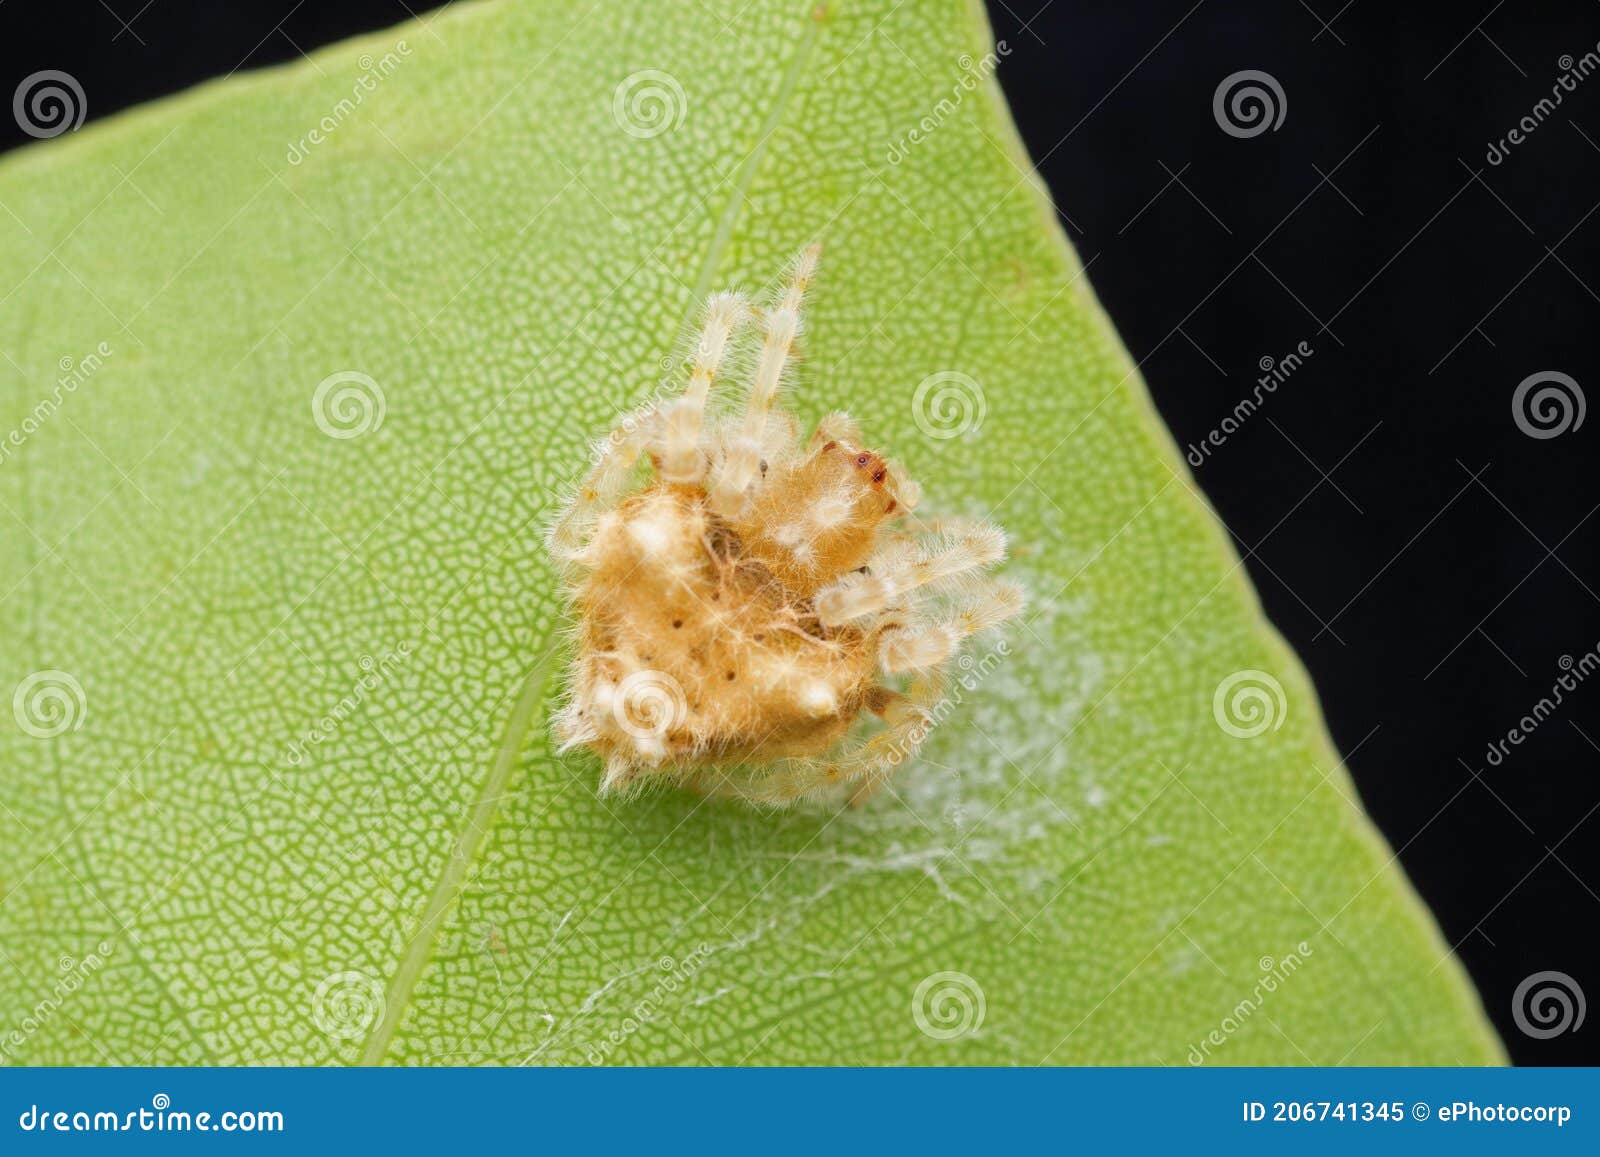 bolas spider or ordgarius monstrosus, satara